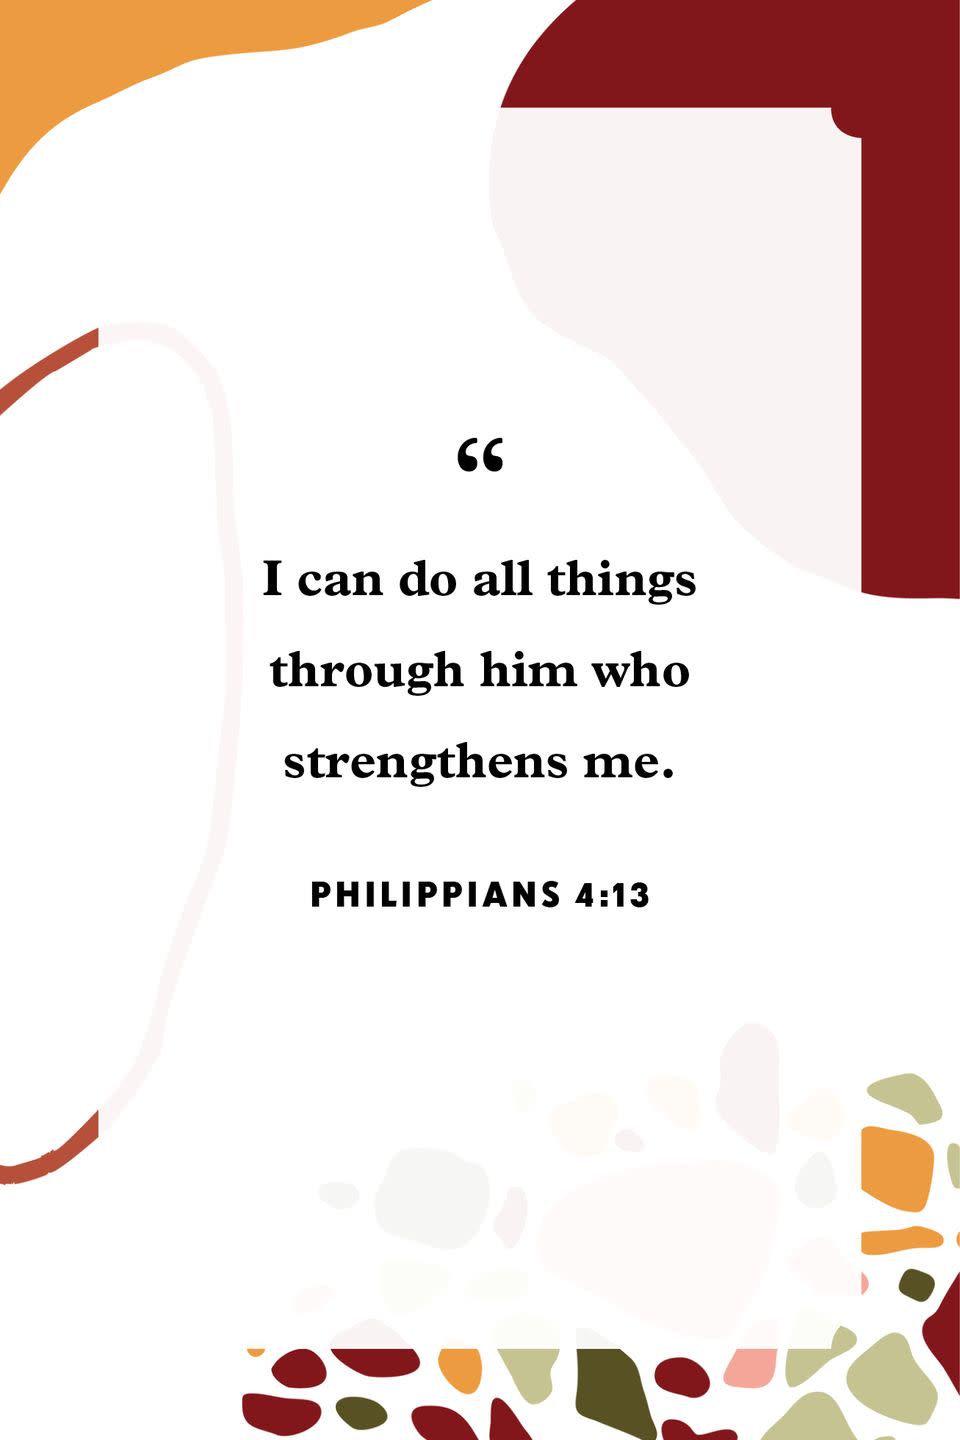 23) Philippians 4:13